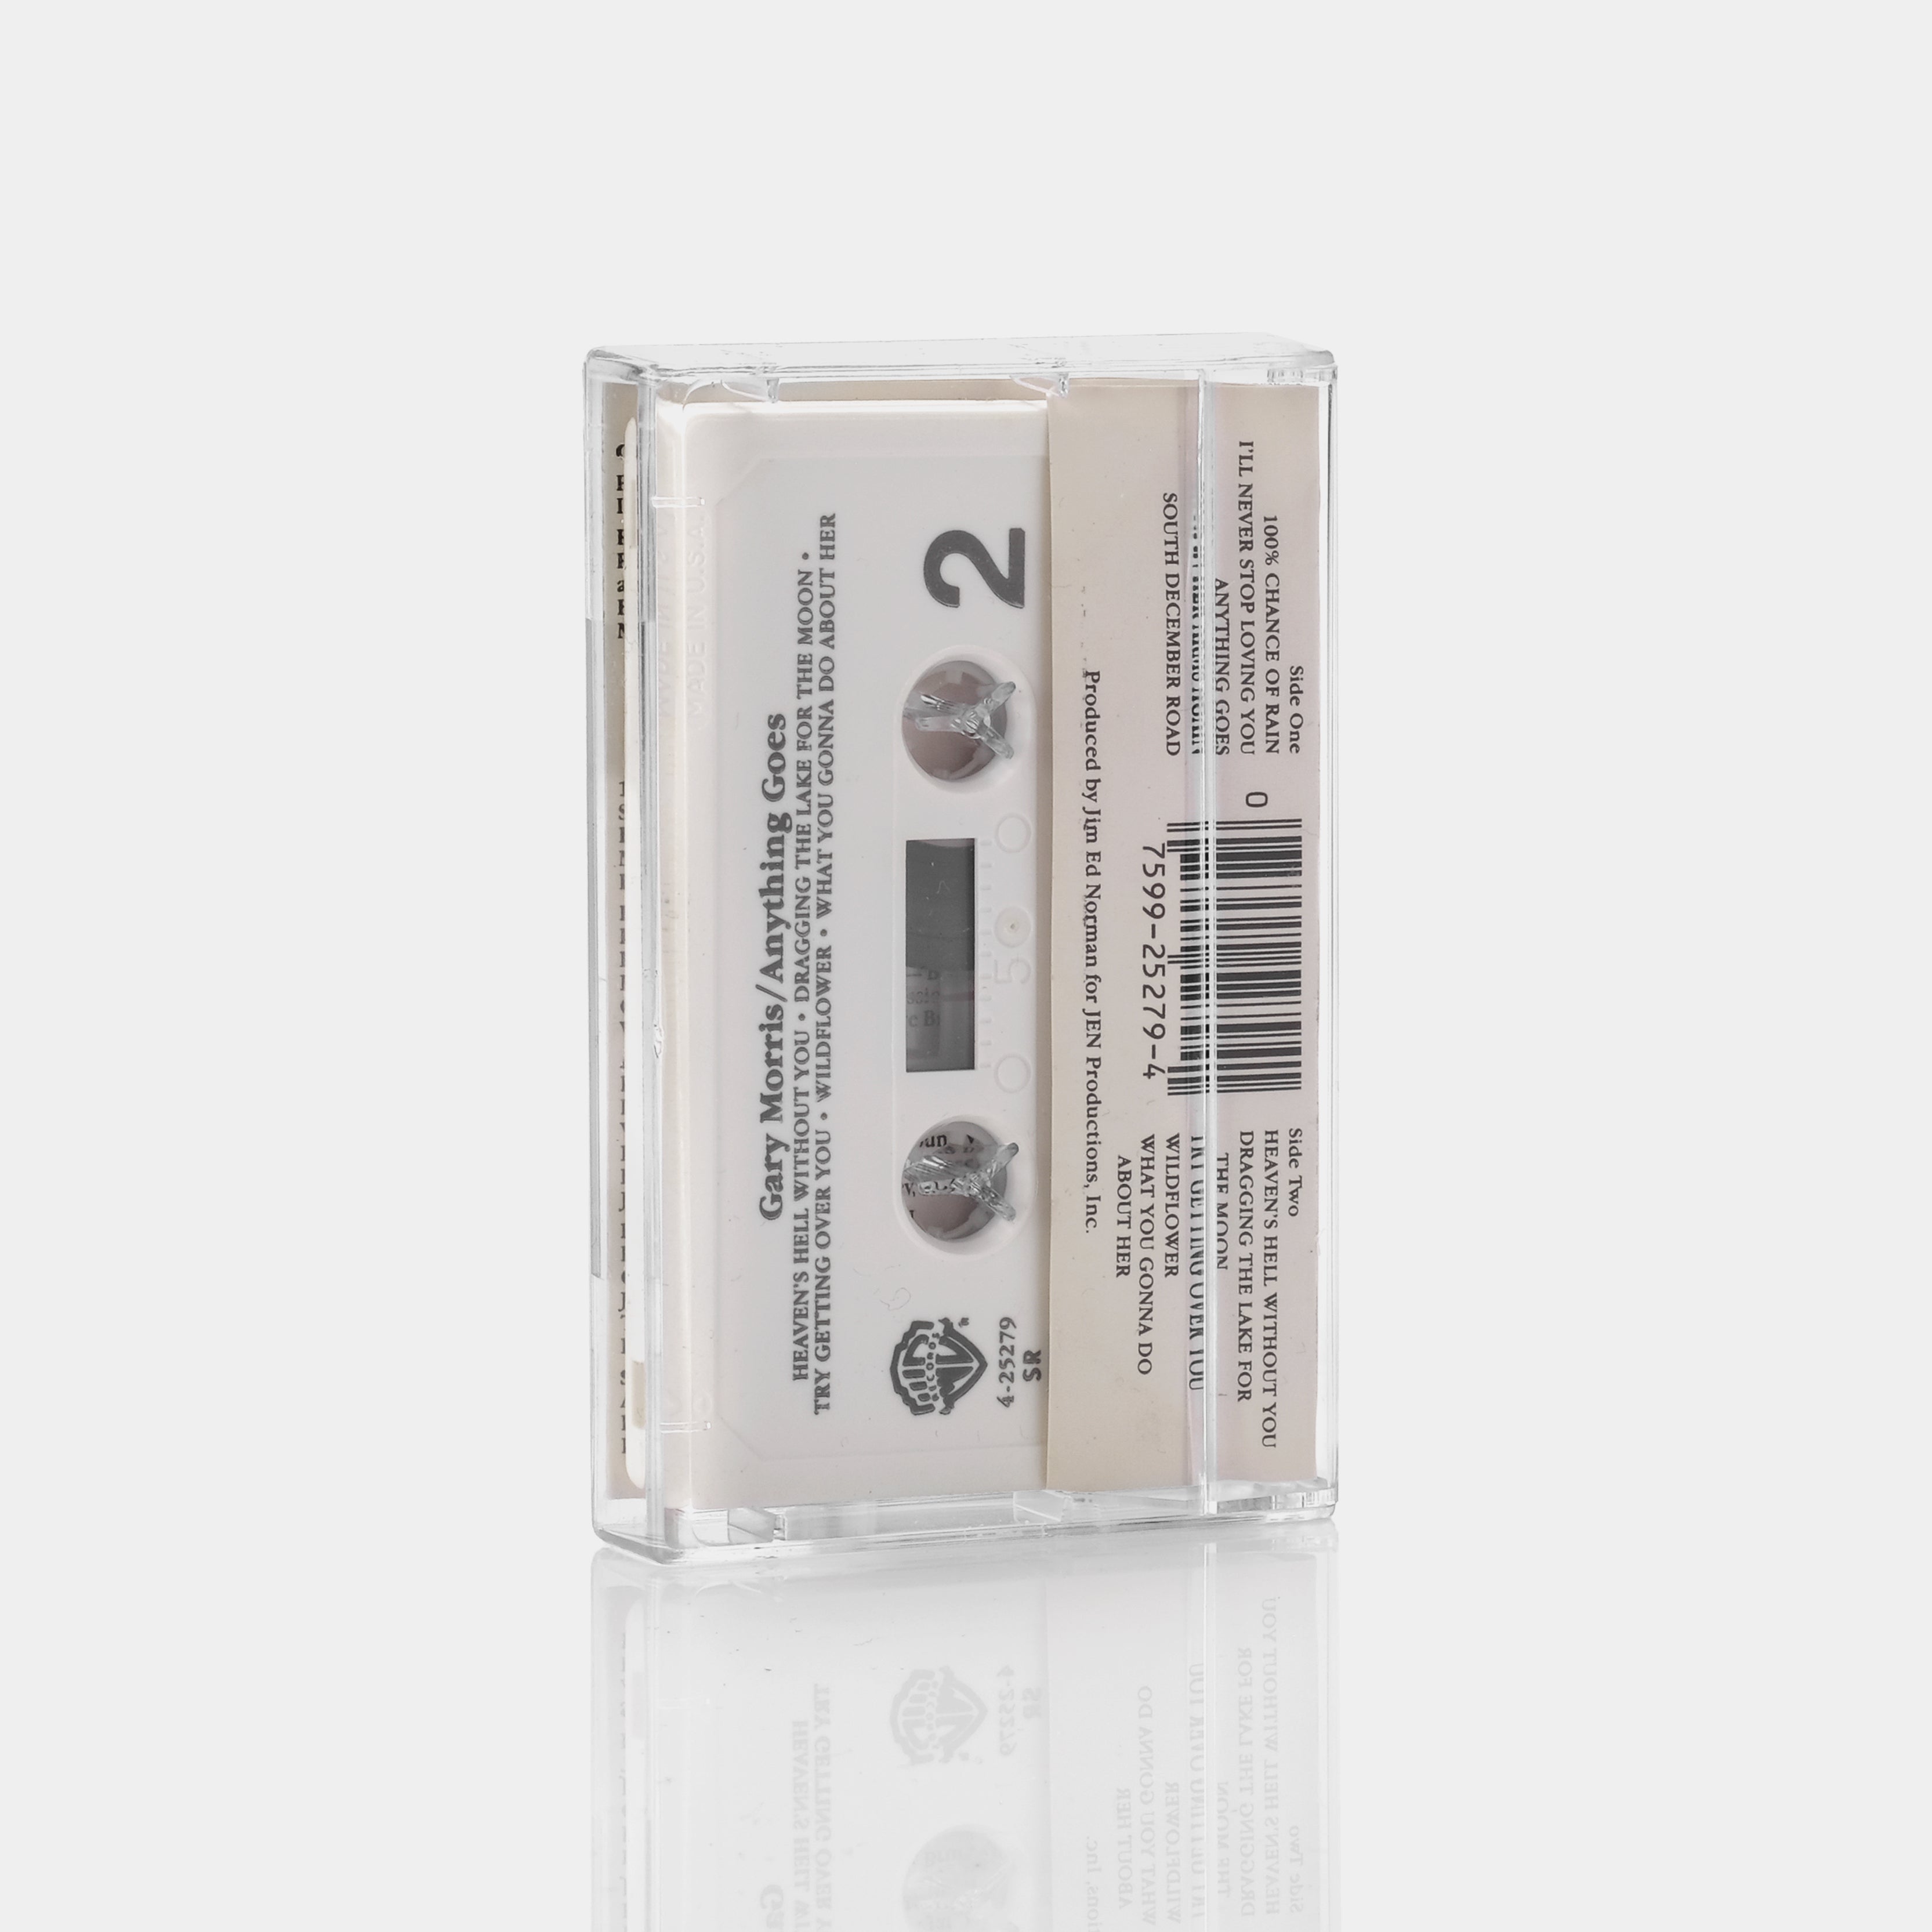 Gary Morris - Anything Goes Cassette Tape